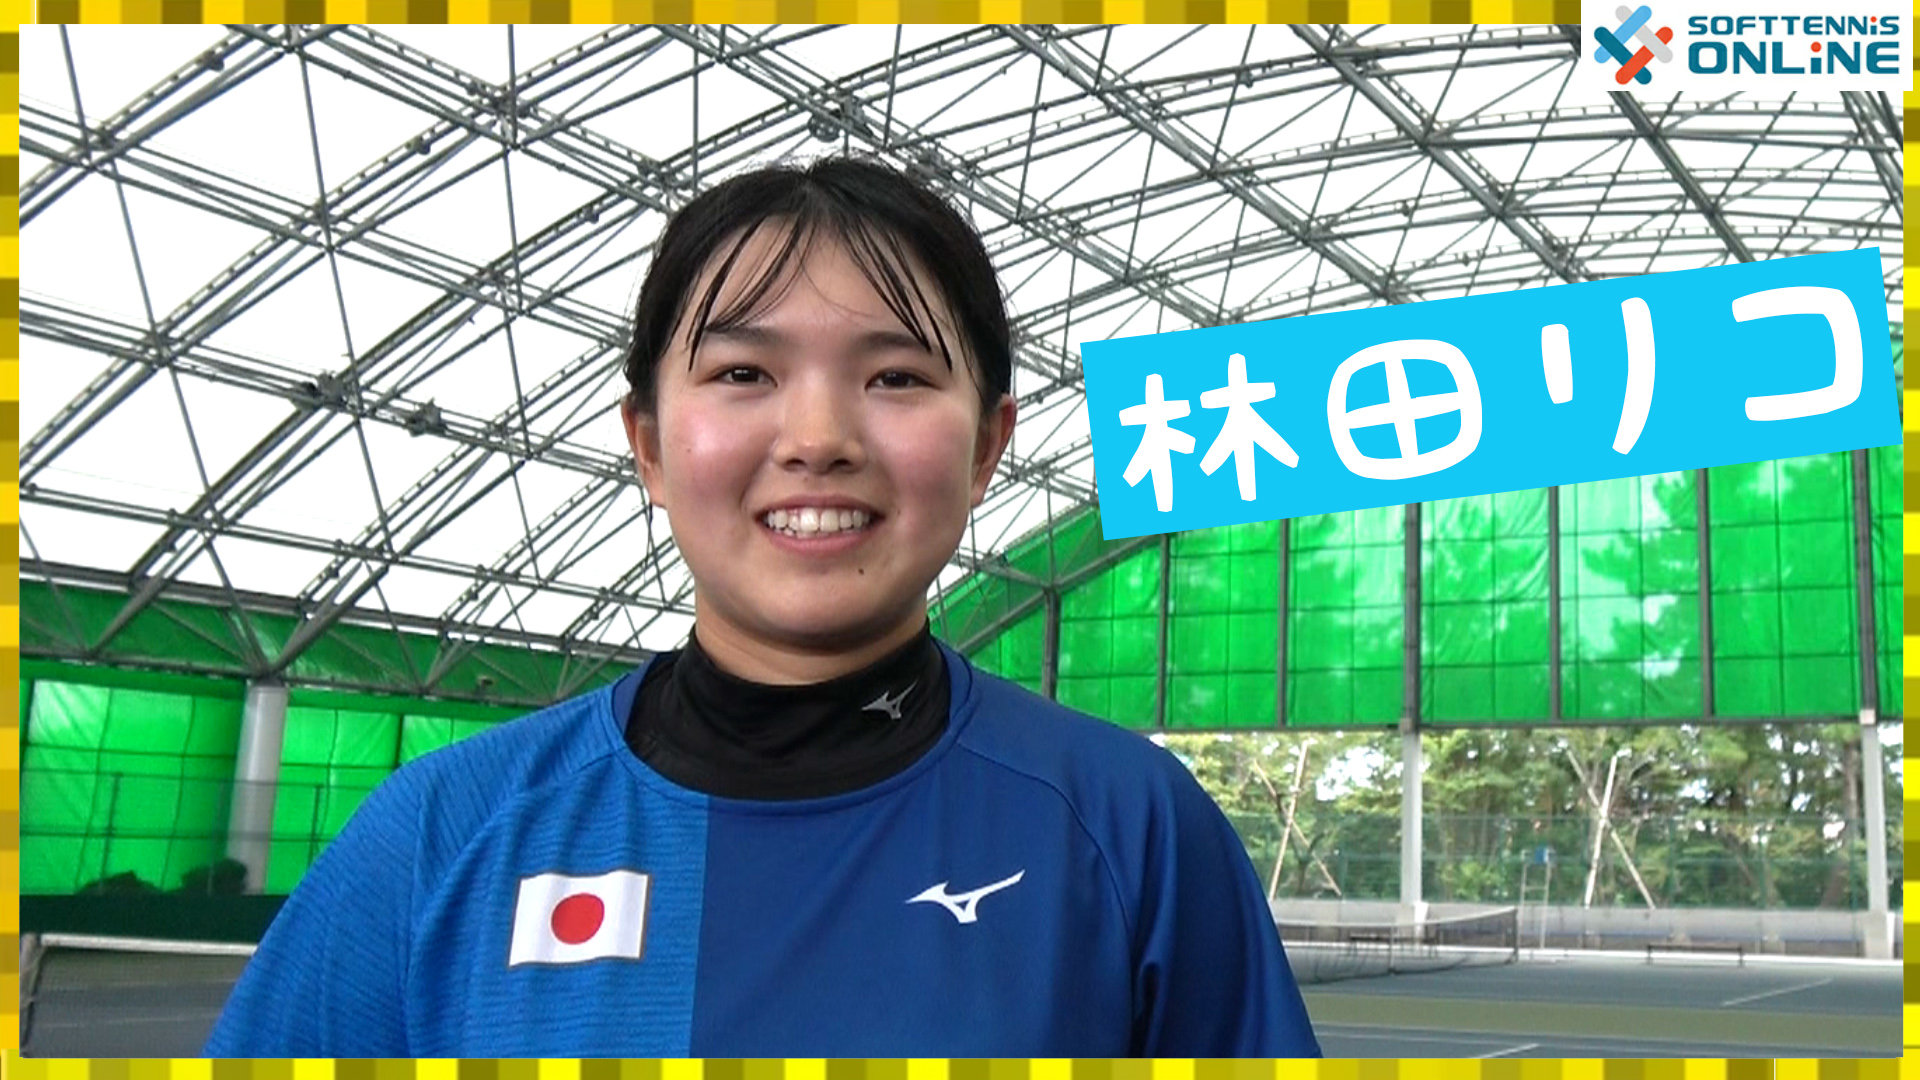 林田リコさん 東京女子体育大学 に聞く 日本代表の素顔に迫る ソフトテニス オンライン